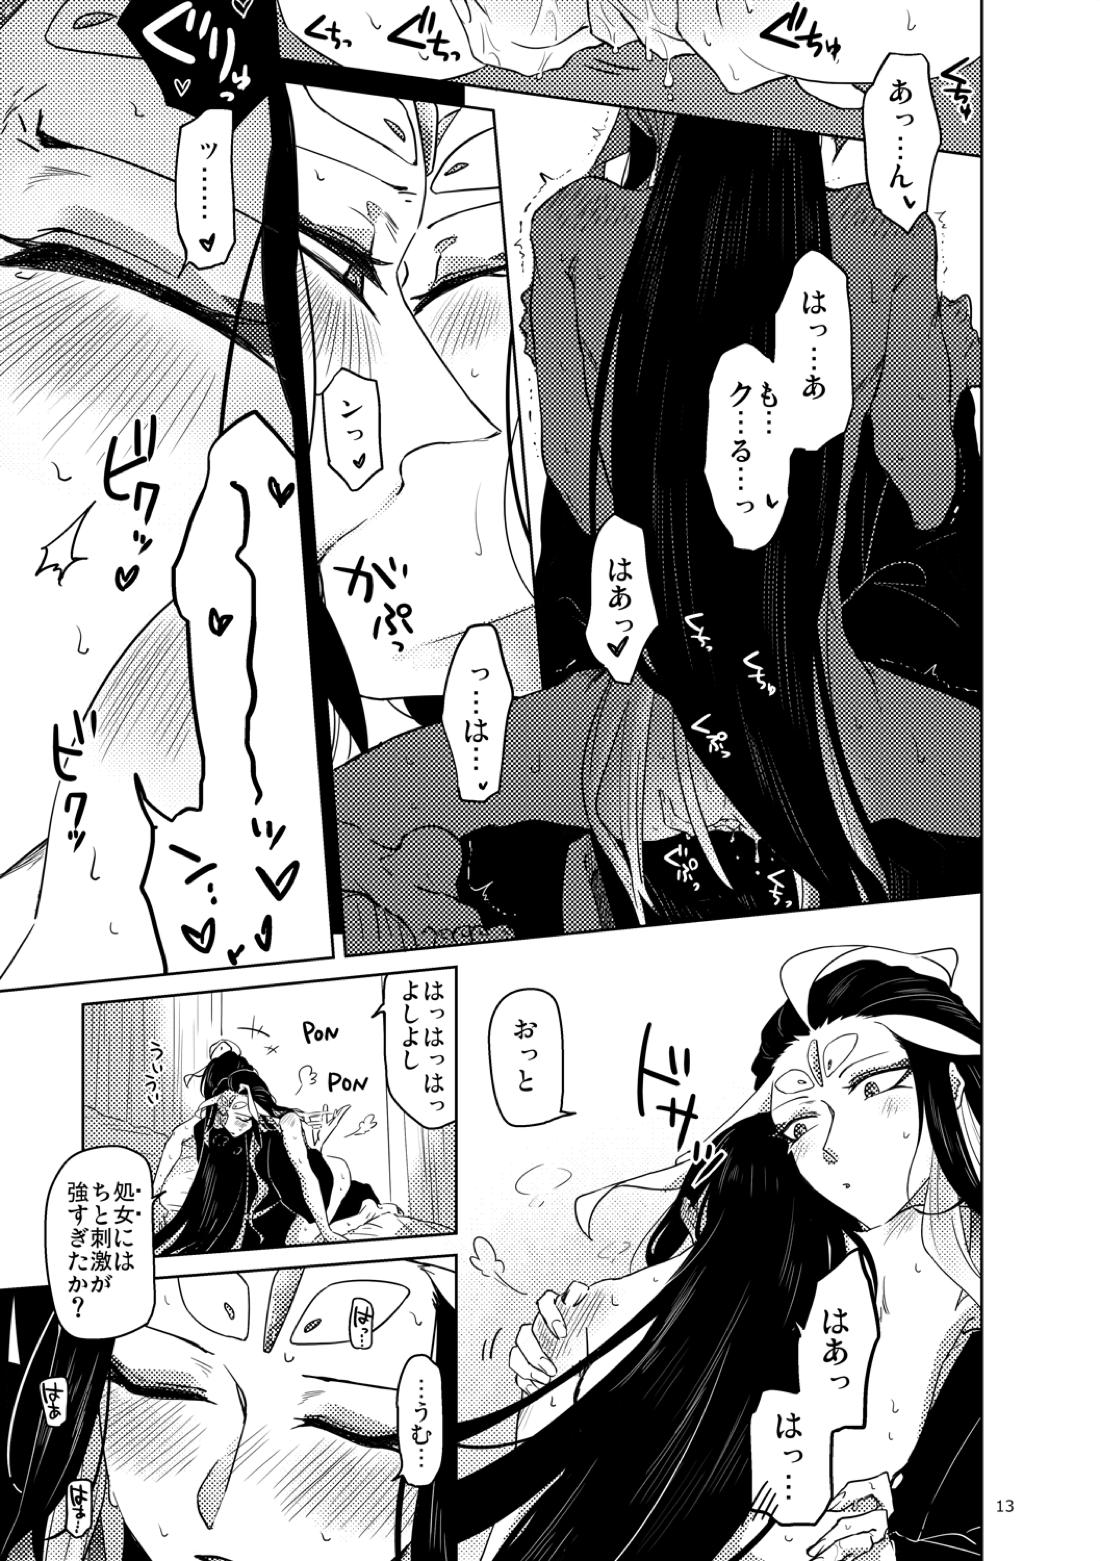 【BL漫画 Fate/Grand Order】男性体と無性体の始皇帝が同期するために媚薬を口にしながら肌を重ねるイチャイチャボーイズラブエッチ14